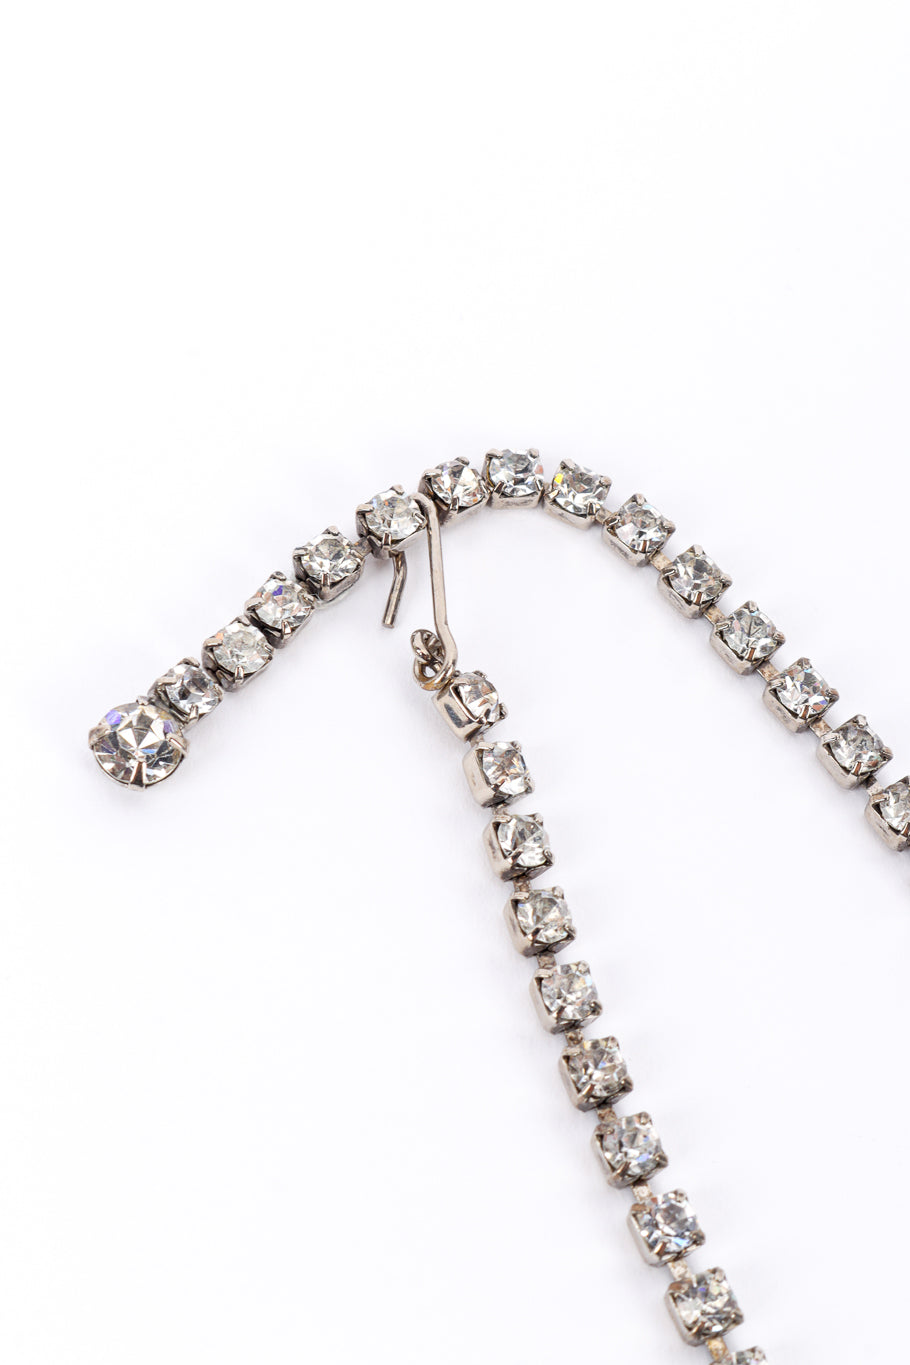 Crystal Teardrop Bib Necklace closeup hook @recessla